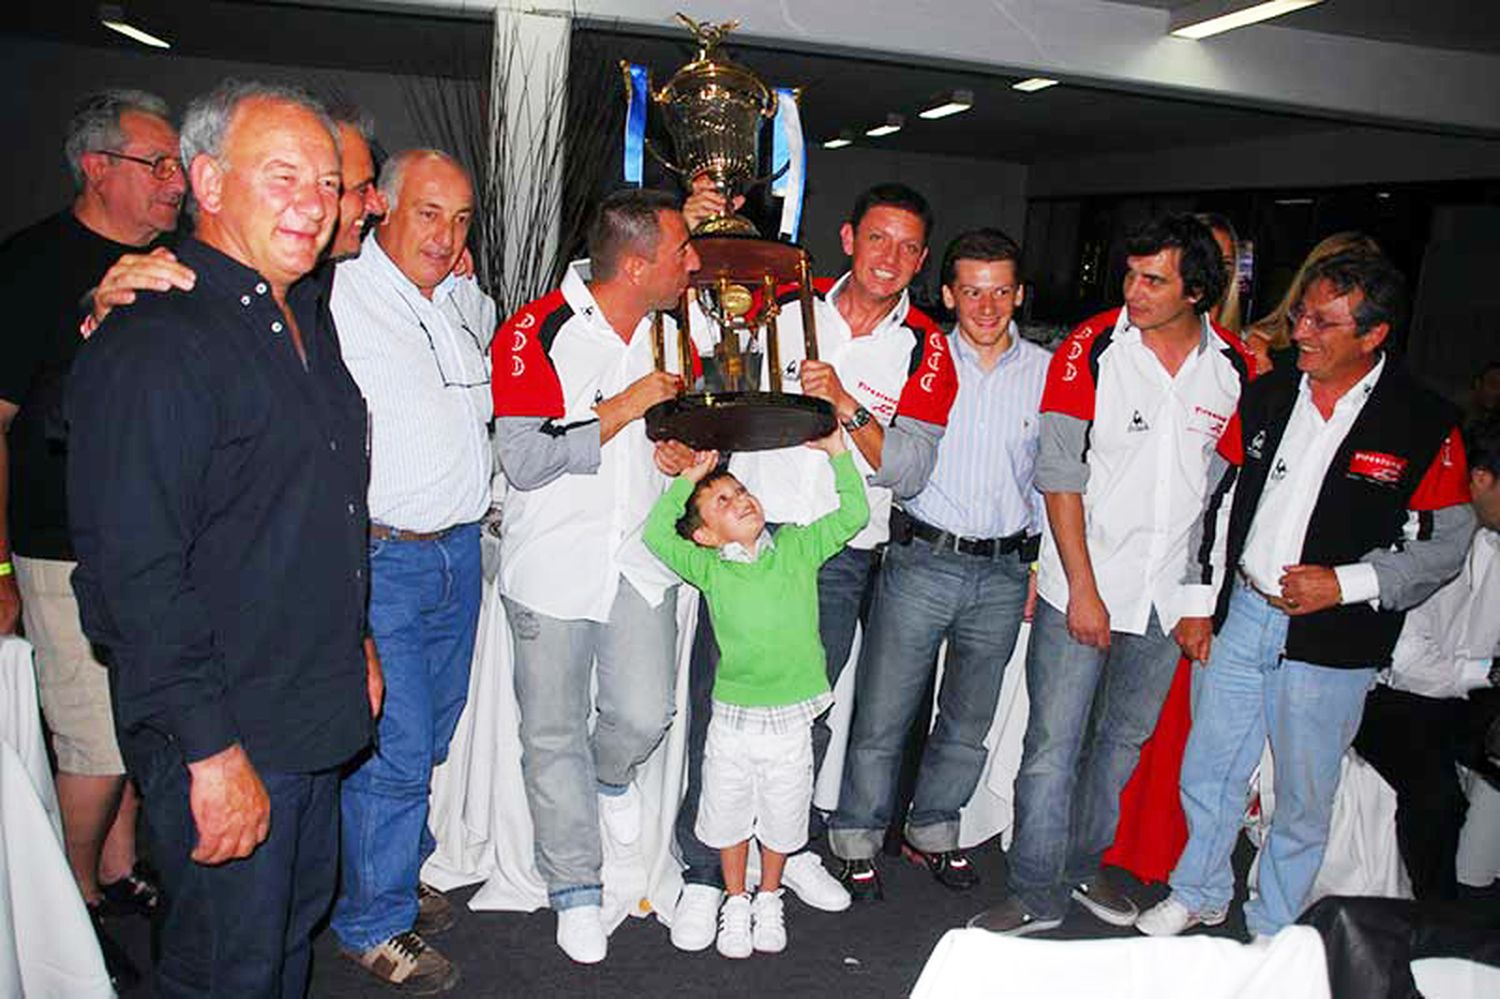 Siempre con festejos. En 2008, con Guillermo Ortelli lograron el título en TC, con motores de Johnny Laboritto y Guillermo Kissling, como chasista del JP